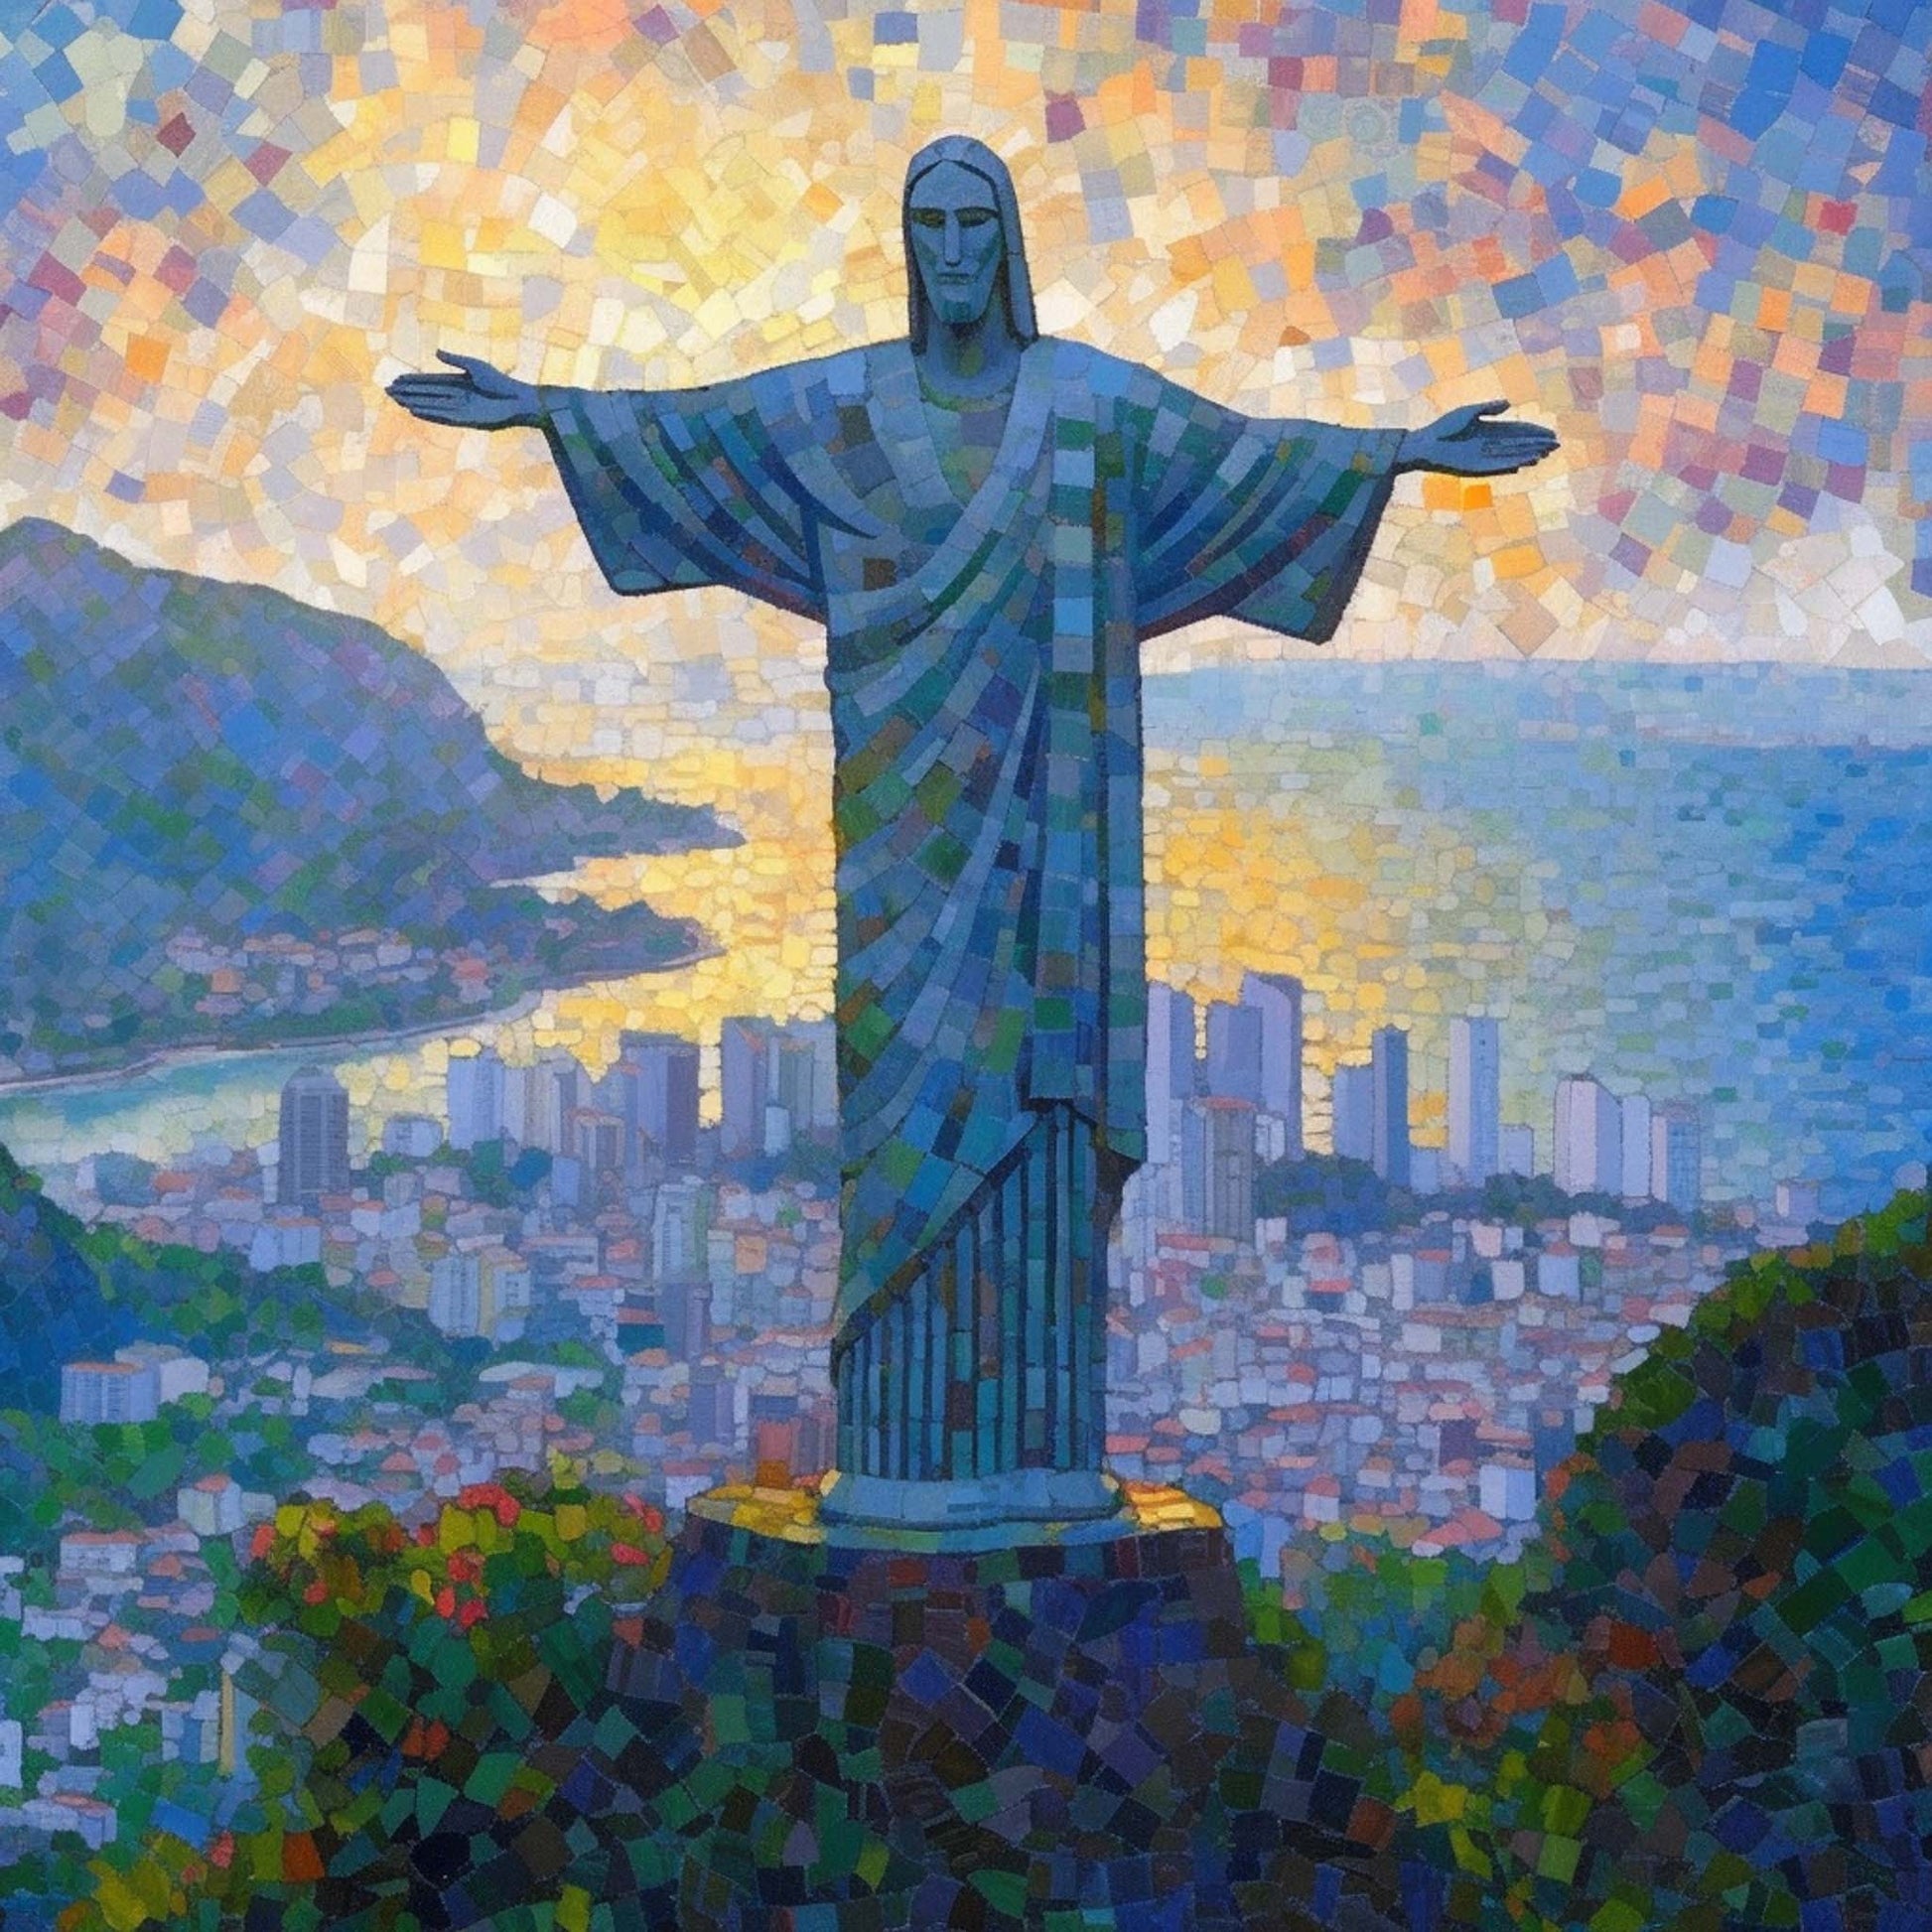 Urbanisto - Rio de Janeiro Christus Statue - Wandbild in der Stilrichtung des Impressionismus